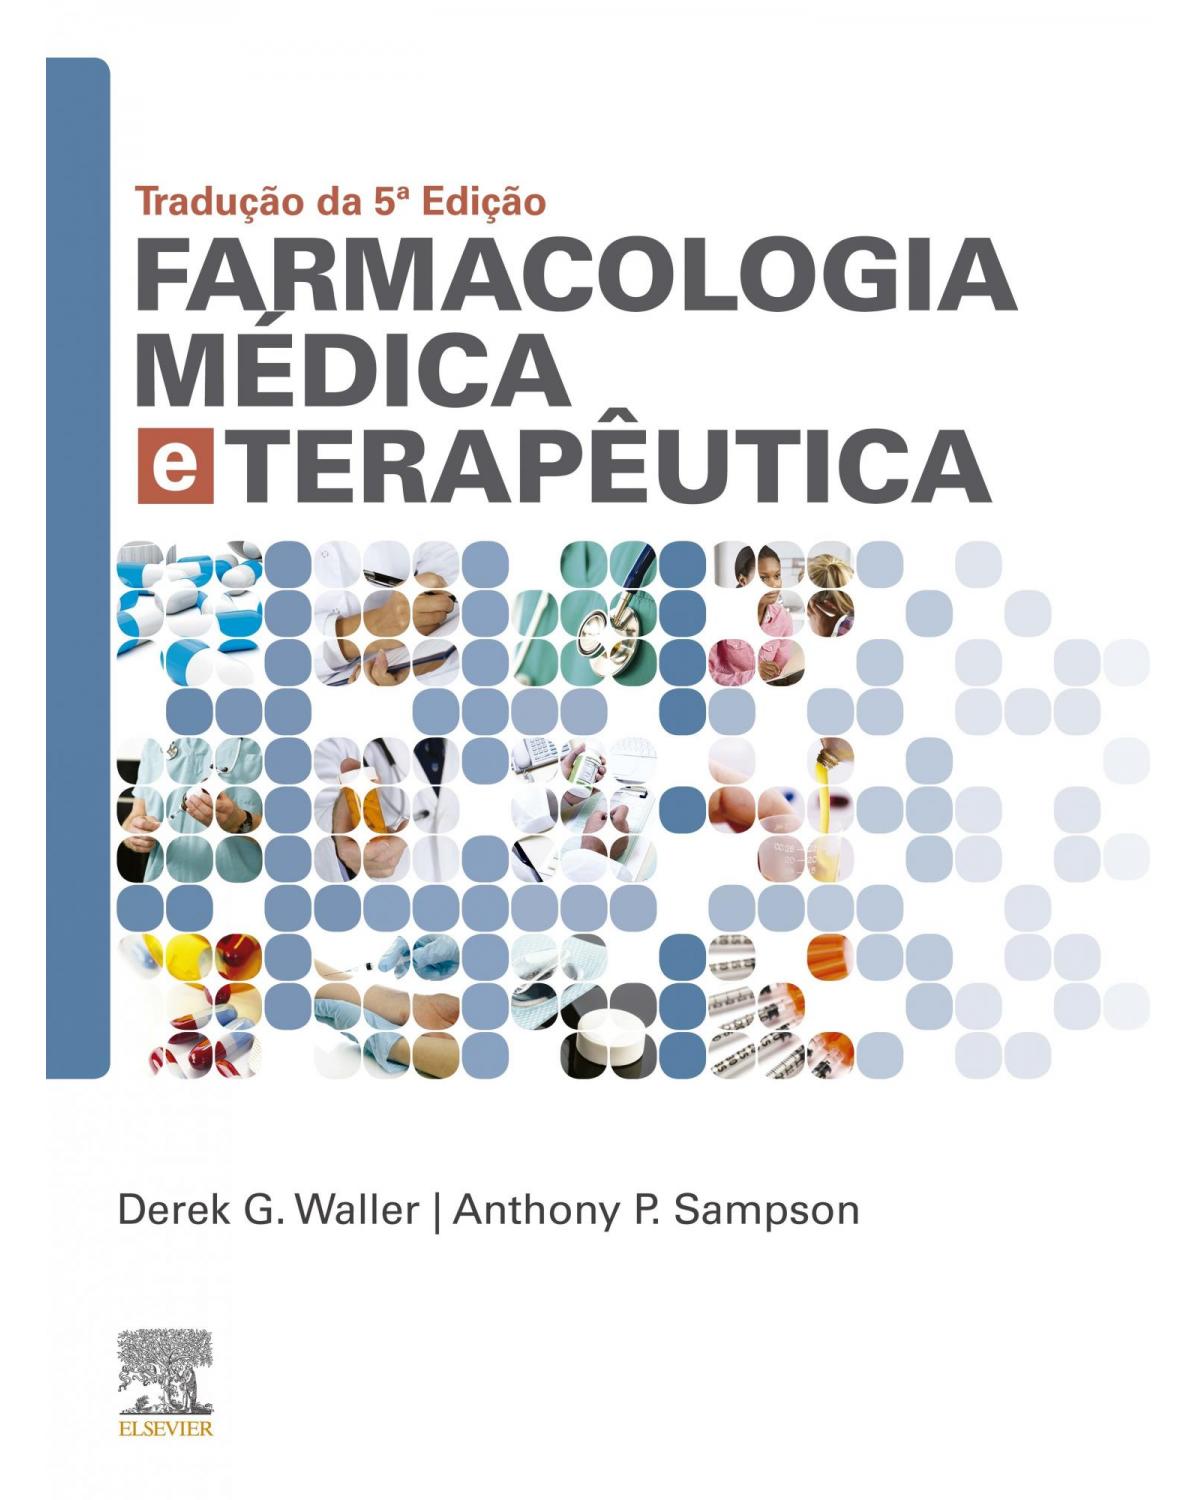 Farmacologia médica e terapêutica - 5ª Edição | 2019